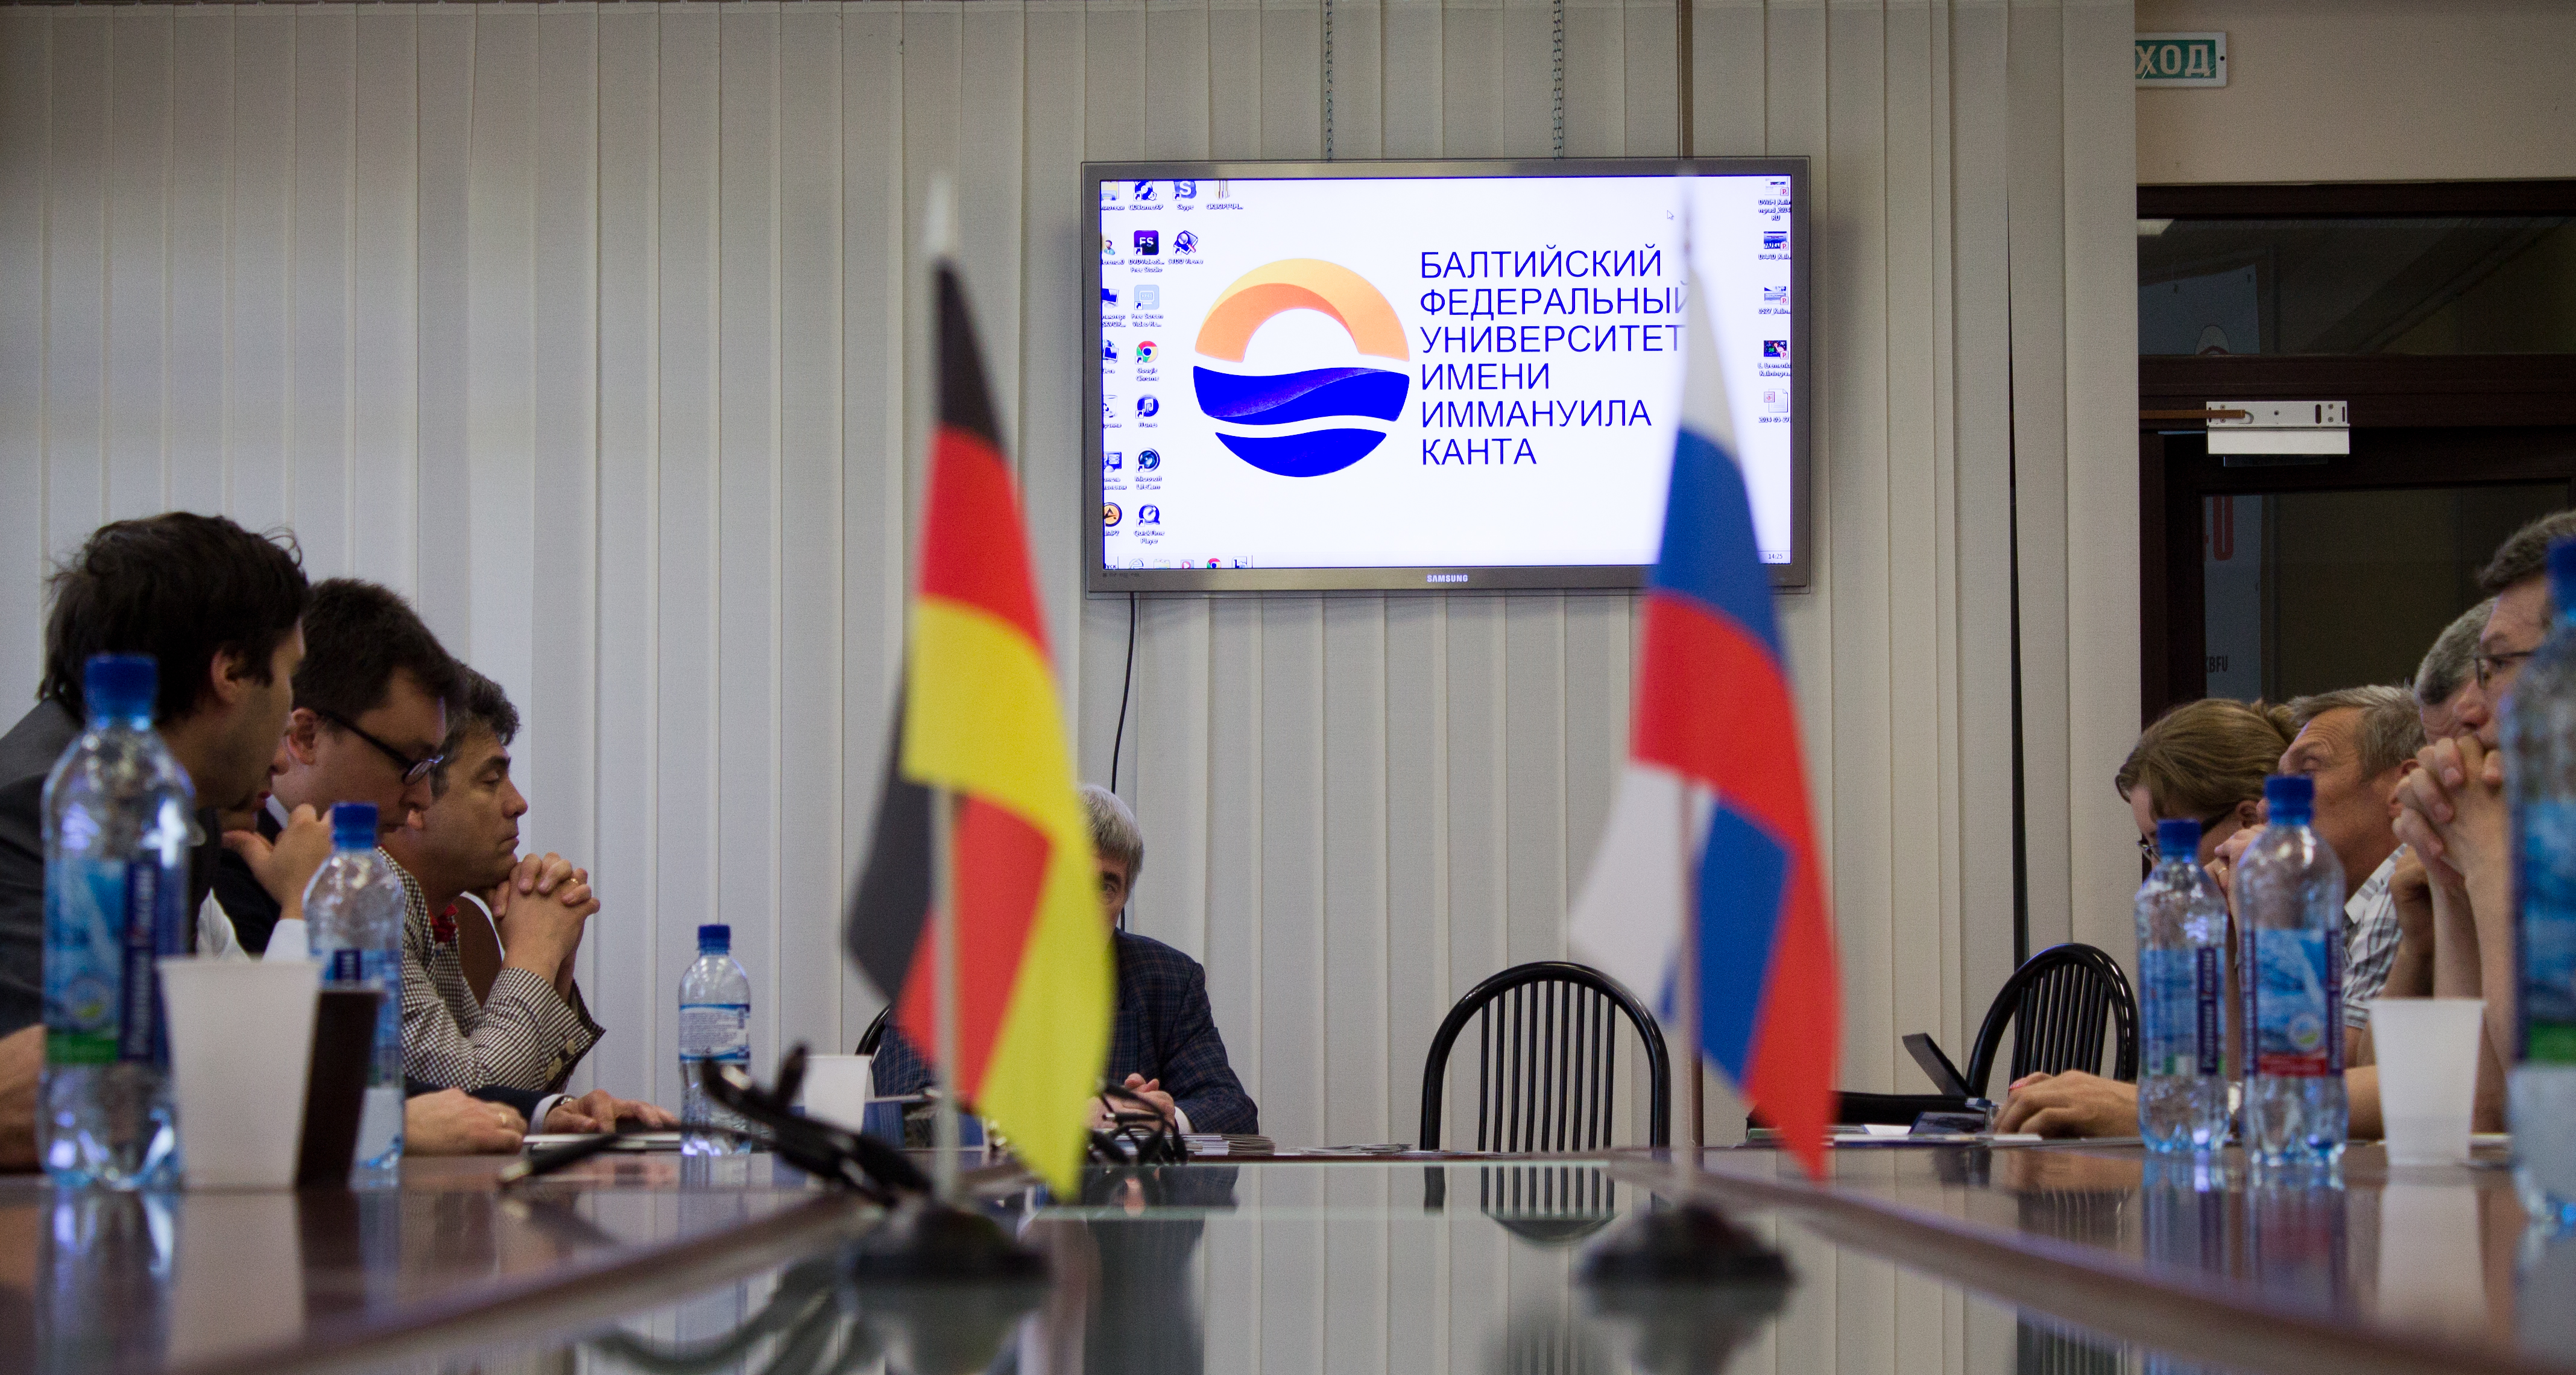 DFG Participates in DWIH Information Visit to Kaliningrad